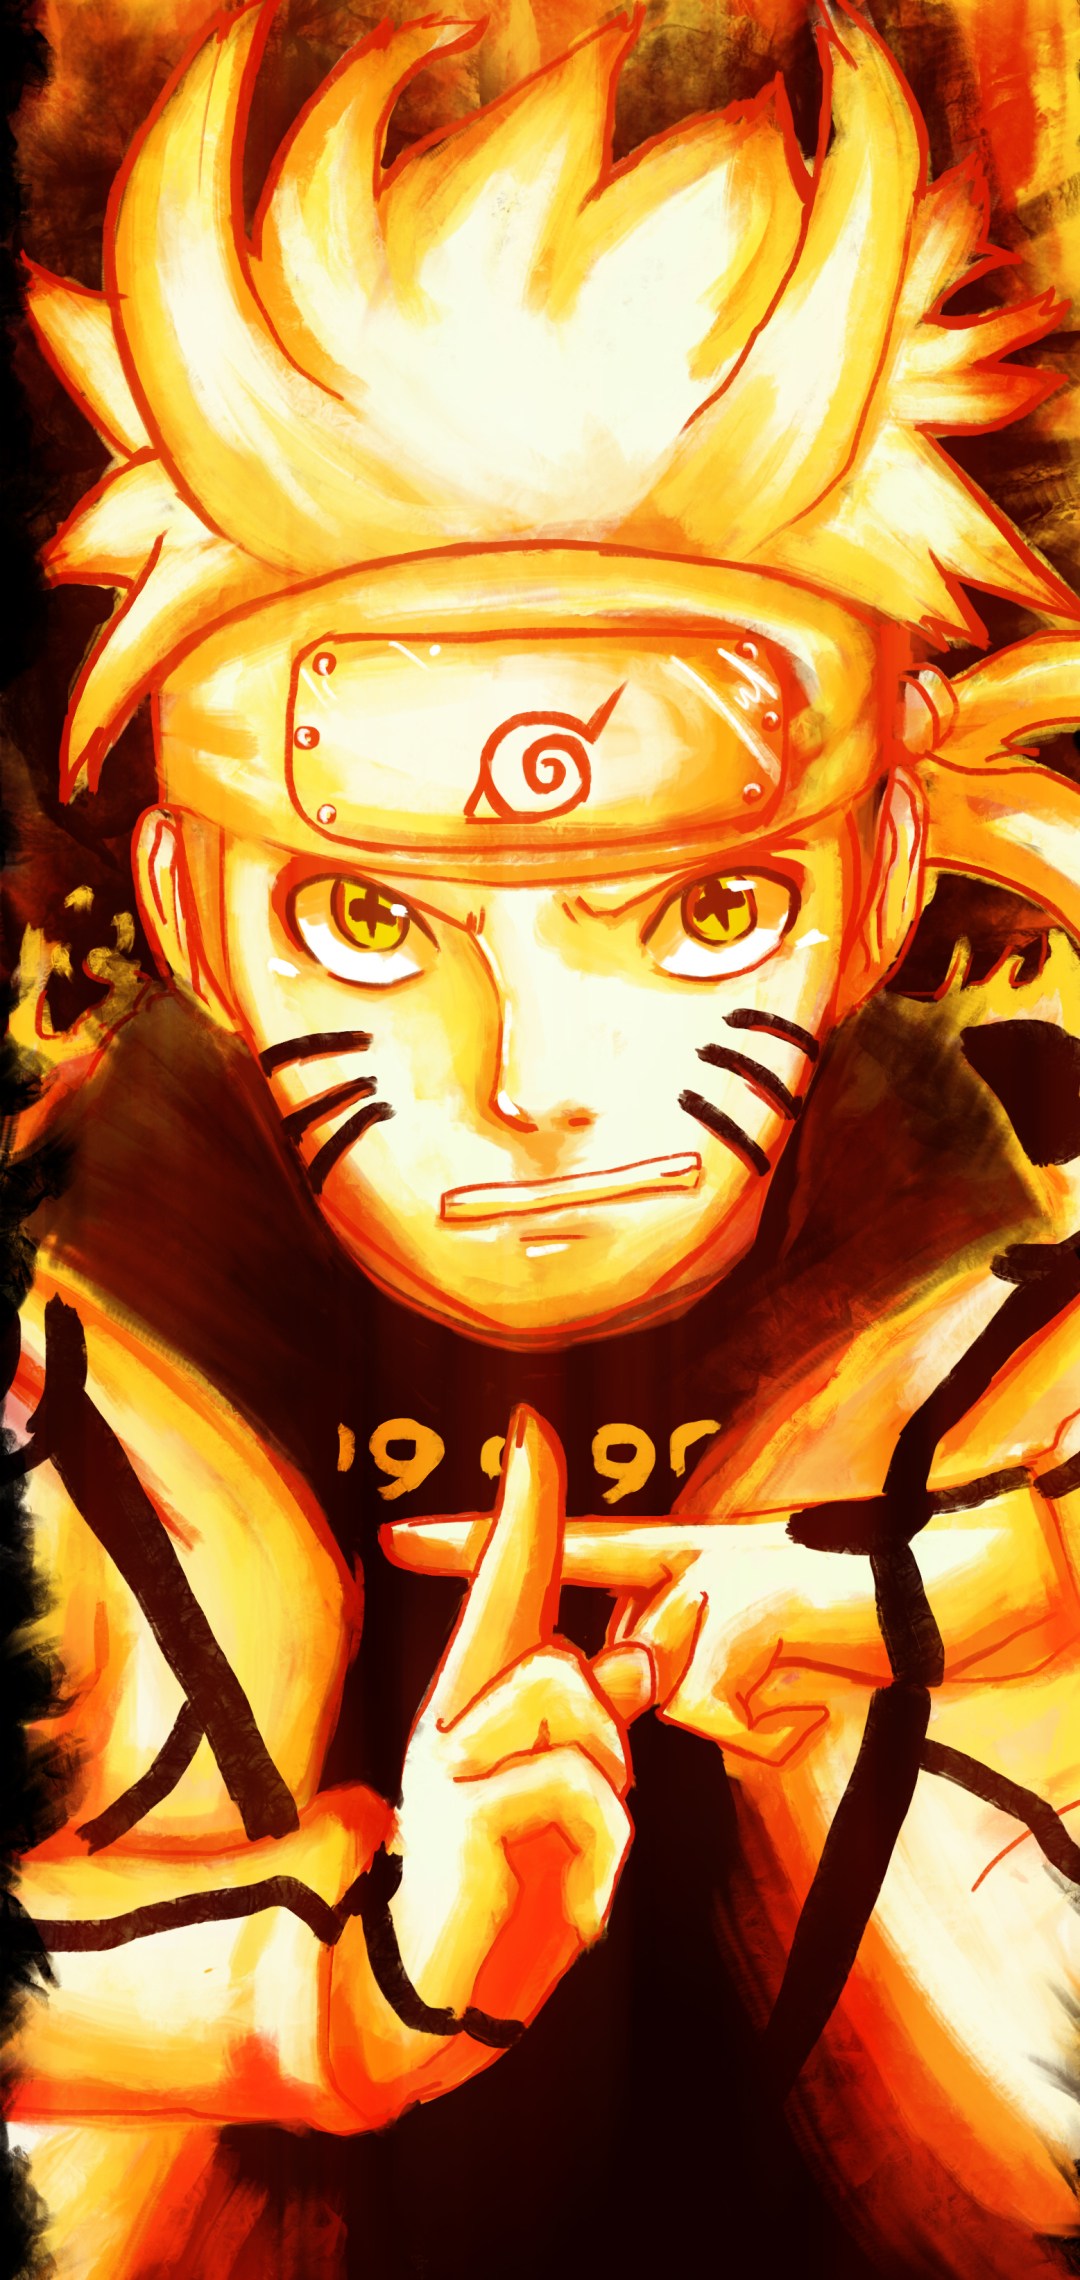 Hình nền Naruto - một bộ sưu tập tuyệt đẹp và đầy tính nghệ thuật cho các fan của series Anime Naruto. Với đa dạng về style và chủ đề, bạn sẽ tìm thấy cho mình những hình nền yêu thích để trang trí màn hình điện thoại hoặc máy tính. Cùng chiêm ngưỡng những hình ảnh đẹp và đầy tính nghệ thuật của Naruto, đưa bạn đến một thế giới đầy màu sắc của Anime.